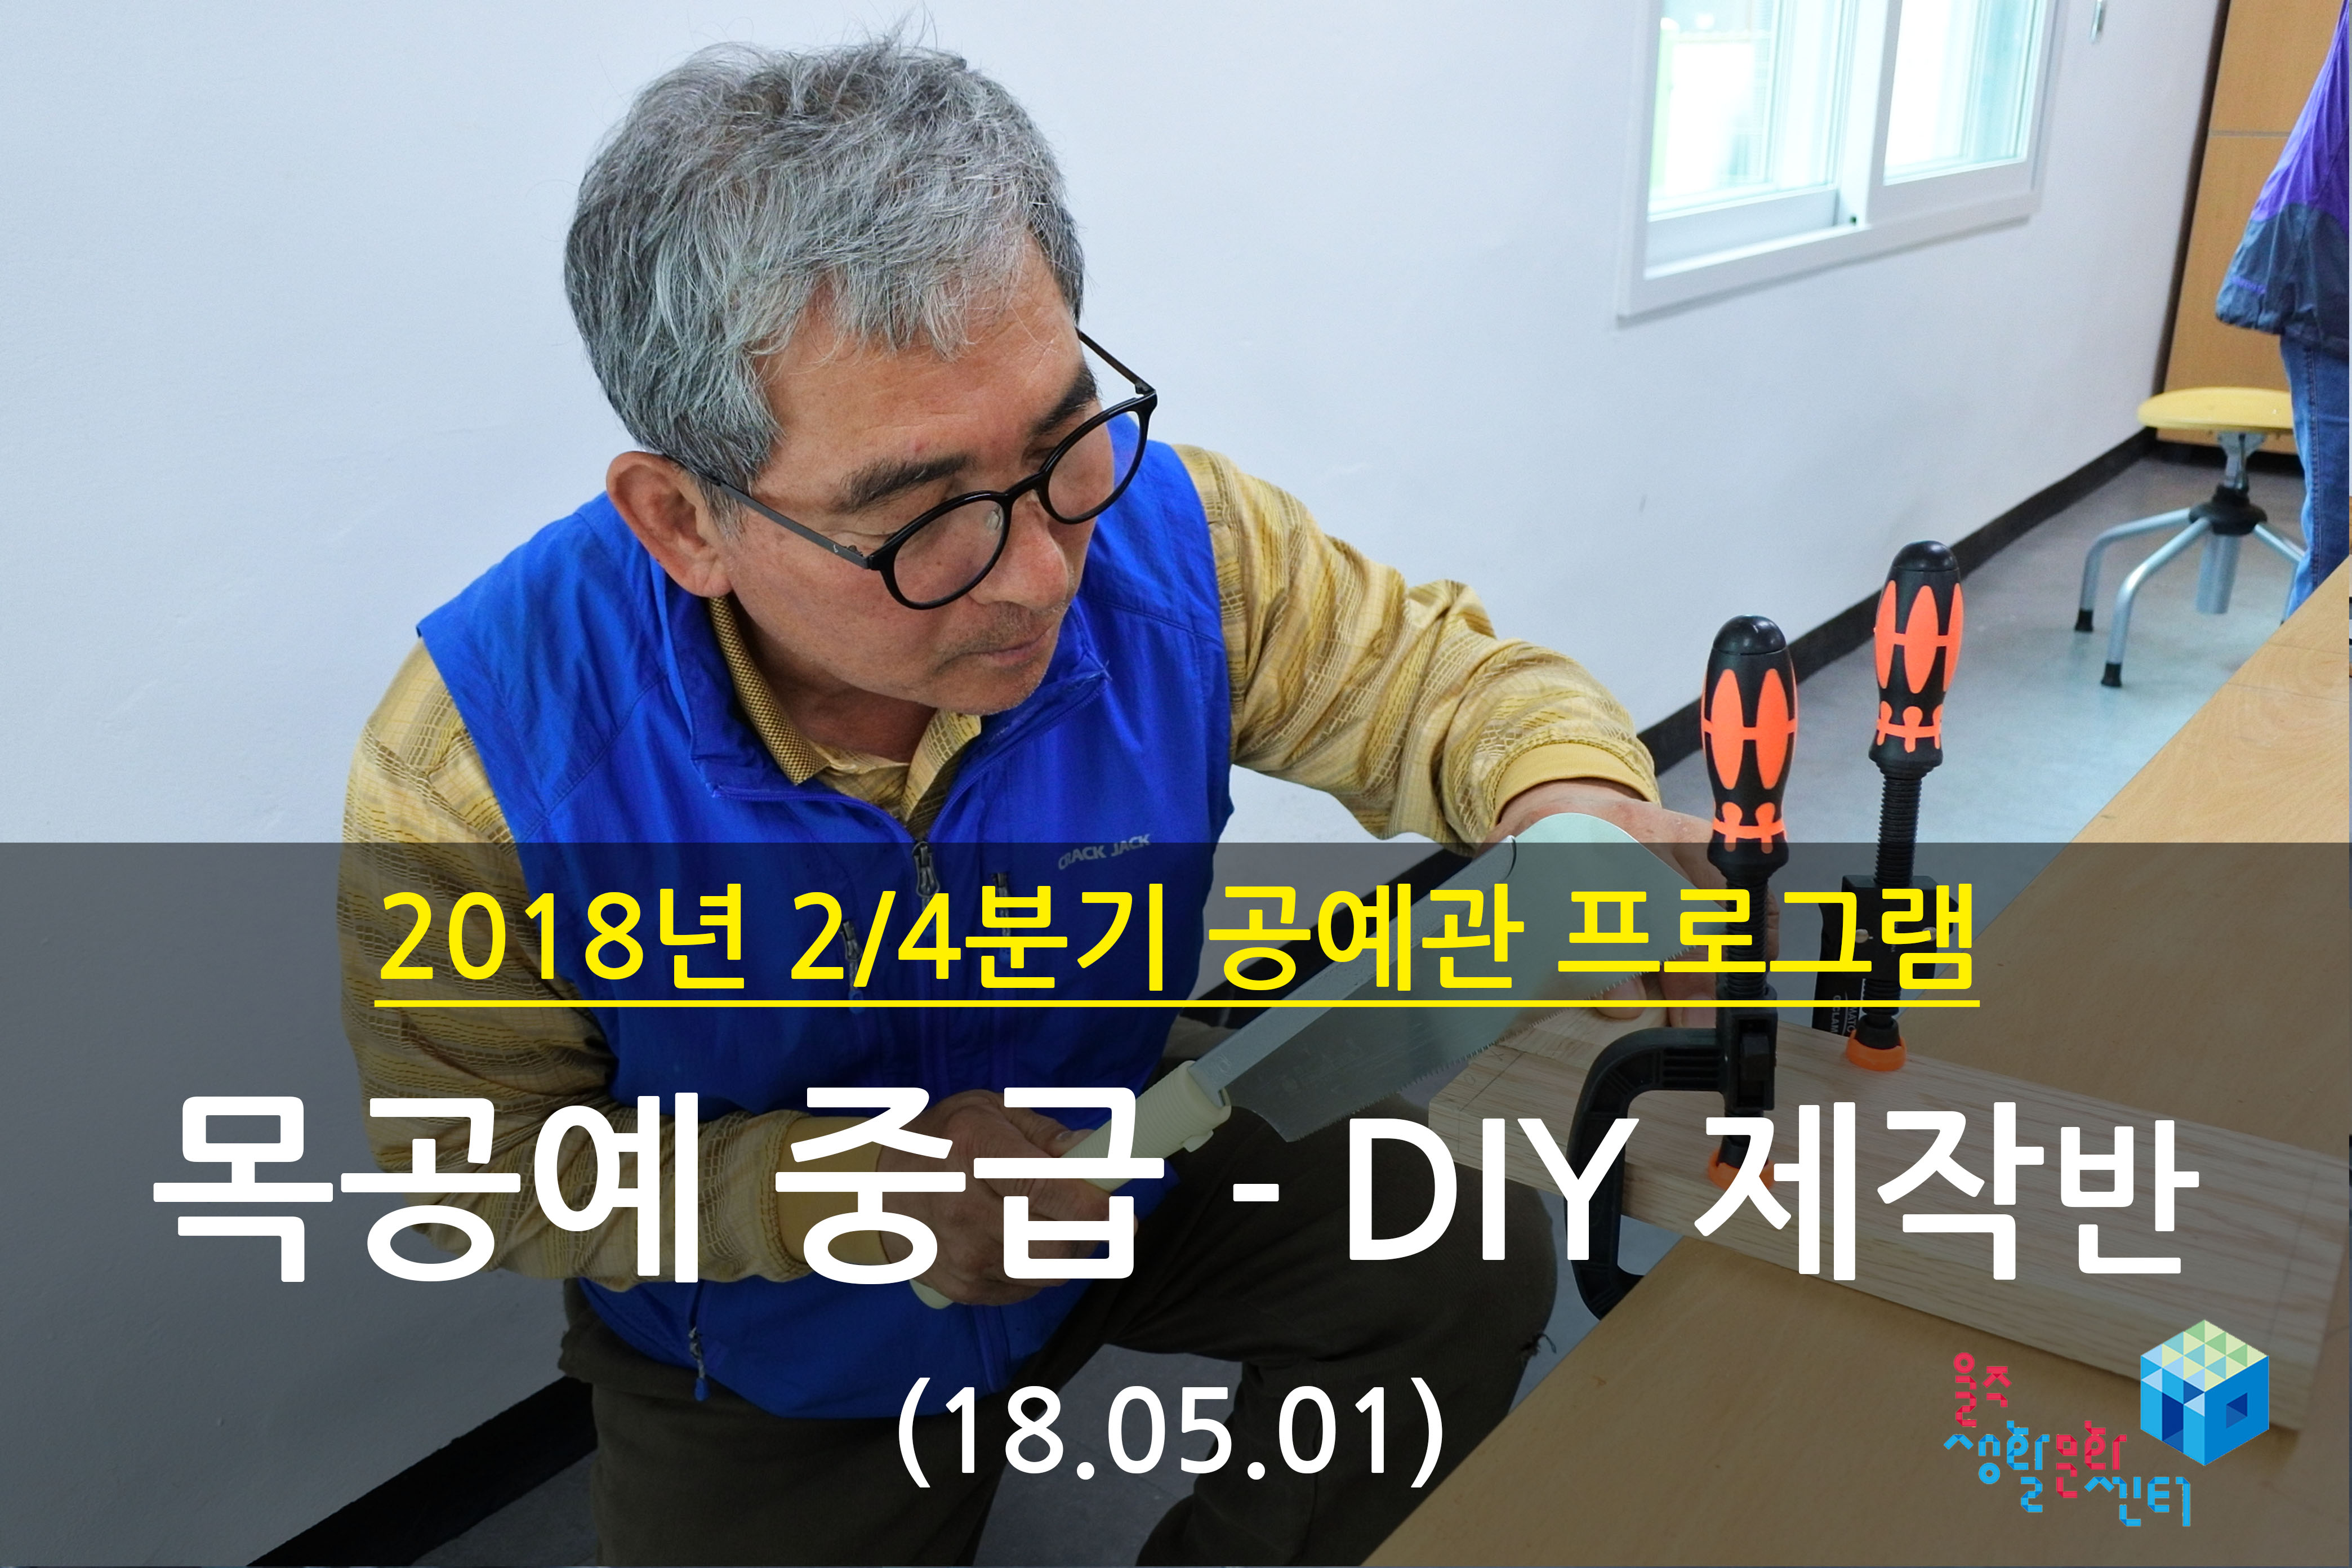 2018.05.01 _ 목공예 중급 - DIY 제작반 _ 2/4분기 5주차 수업